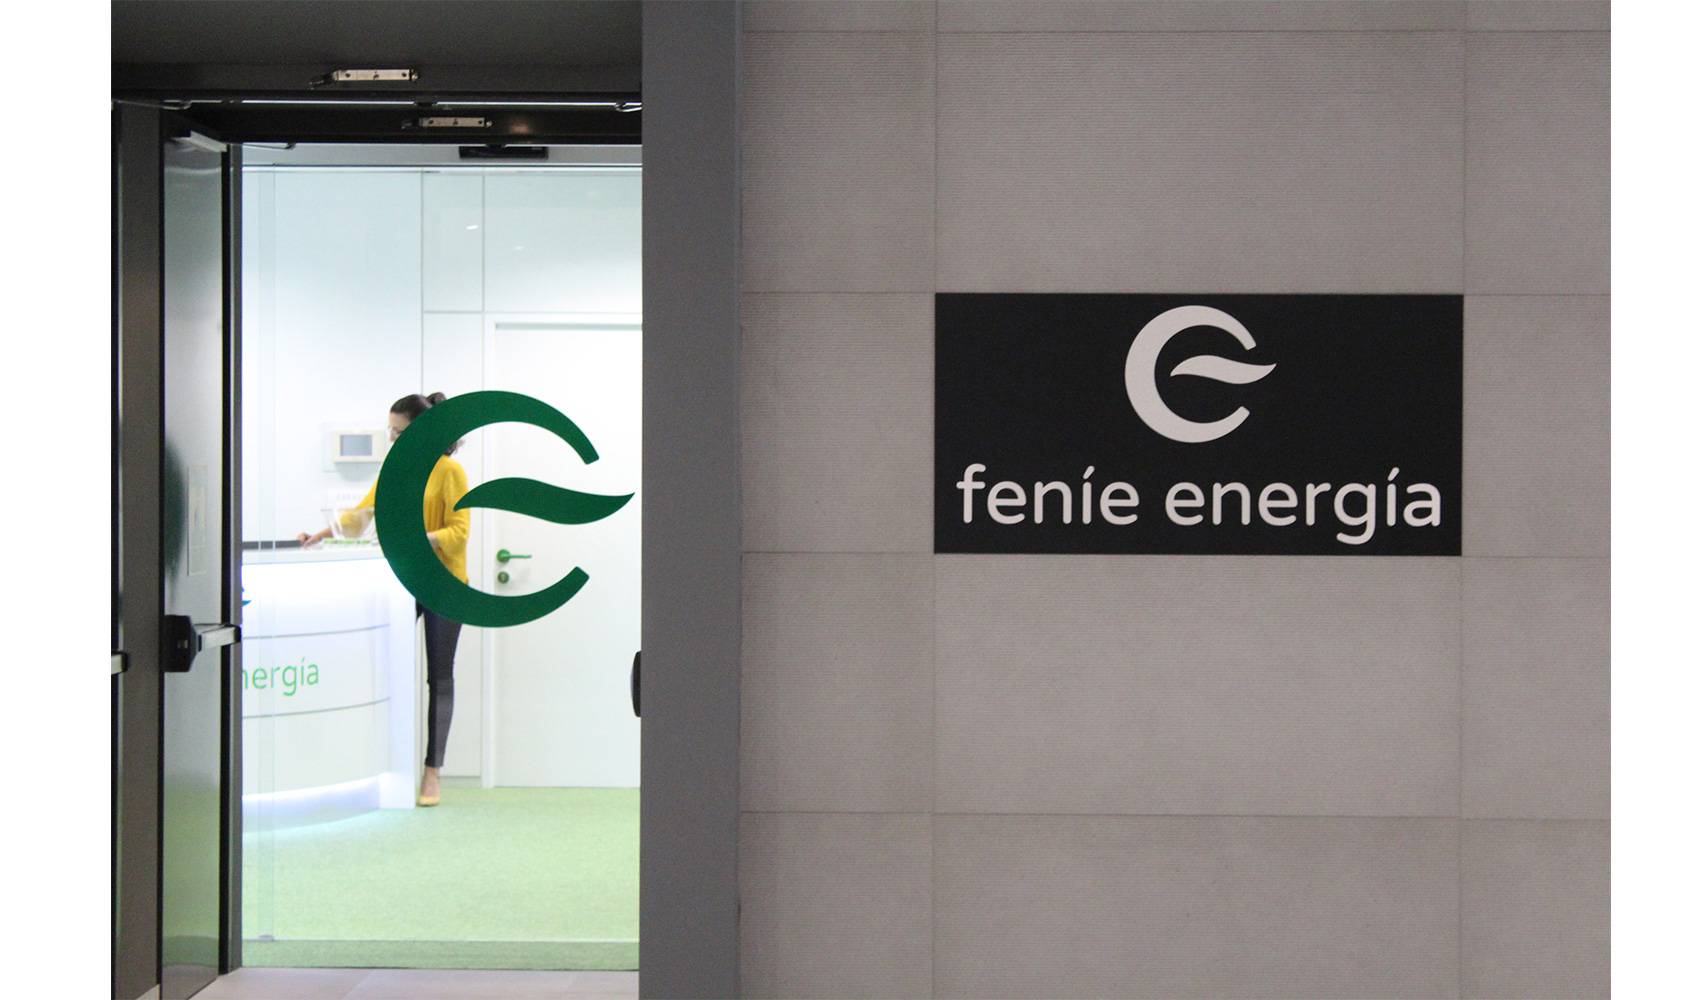 Fene Energa ha logrado reducir el volumen de comunicaciones postales devueltas...